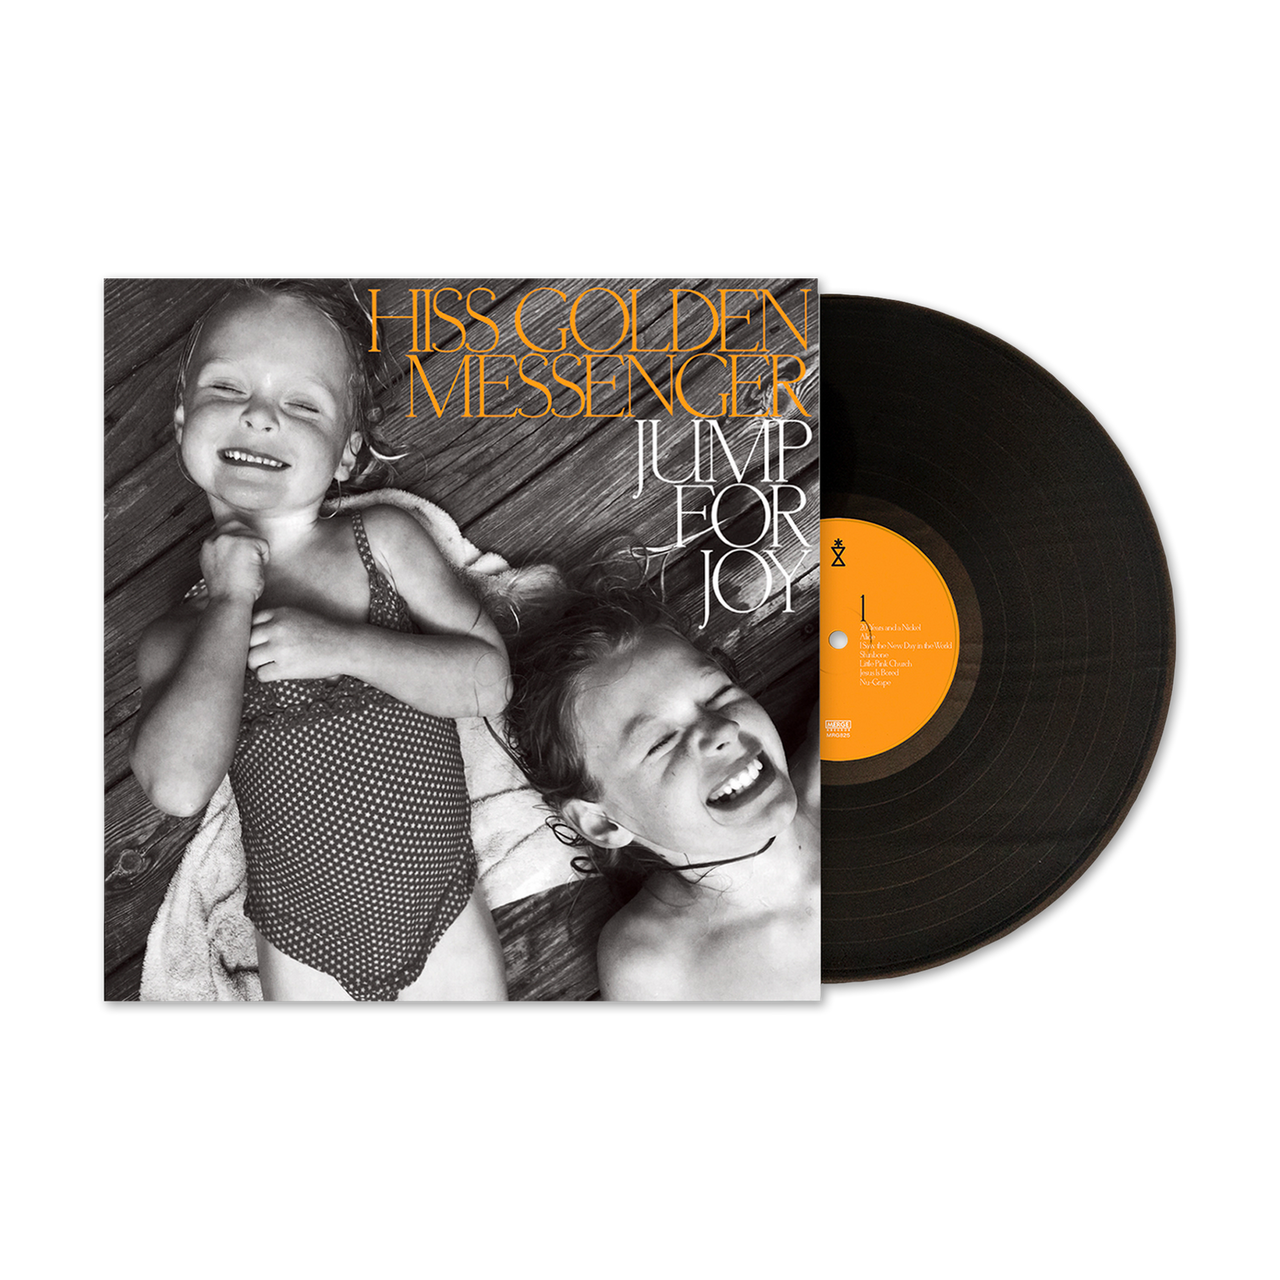 Hiss Golden Messenger: Jump For Joy Vinyl LP